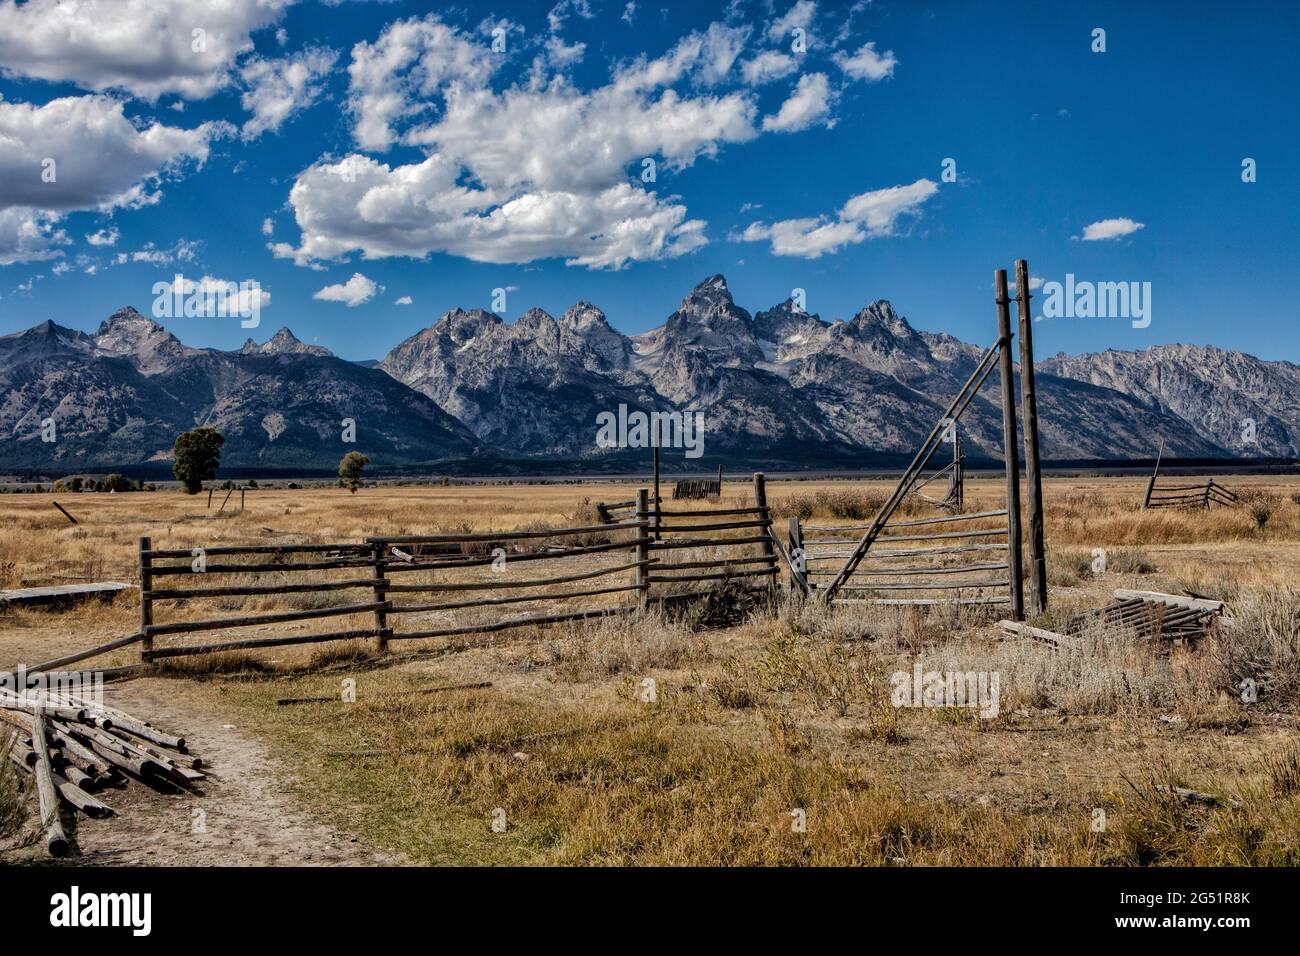 Paysage avec chaîne de montagnes et champ, parc national de Grand Teton, Wyoming, États-Unis Banque D'Images